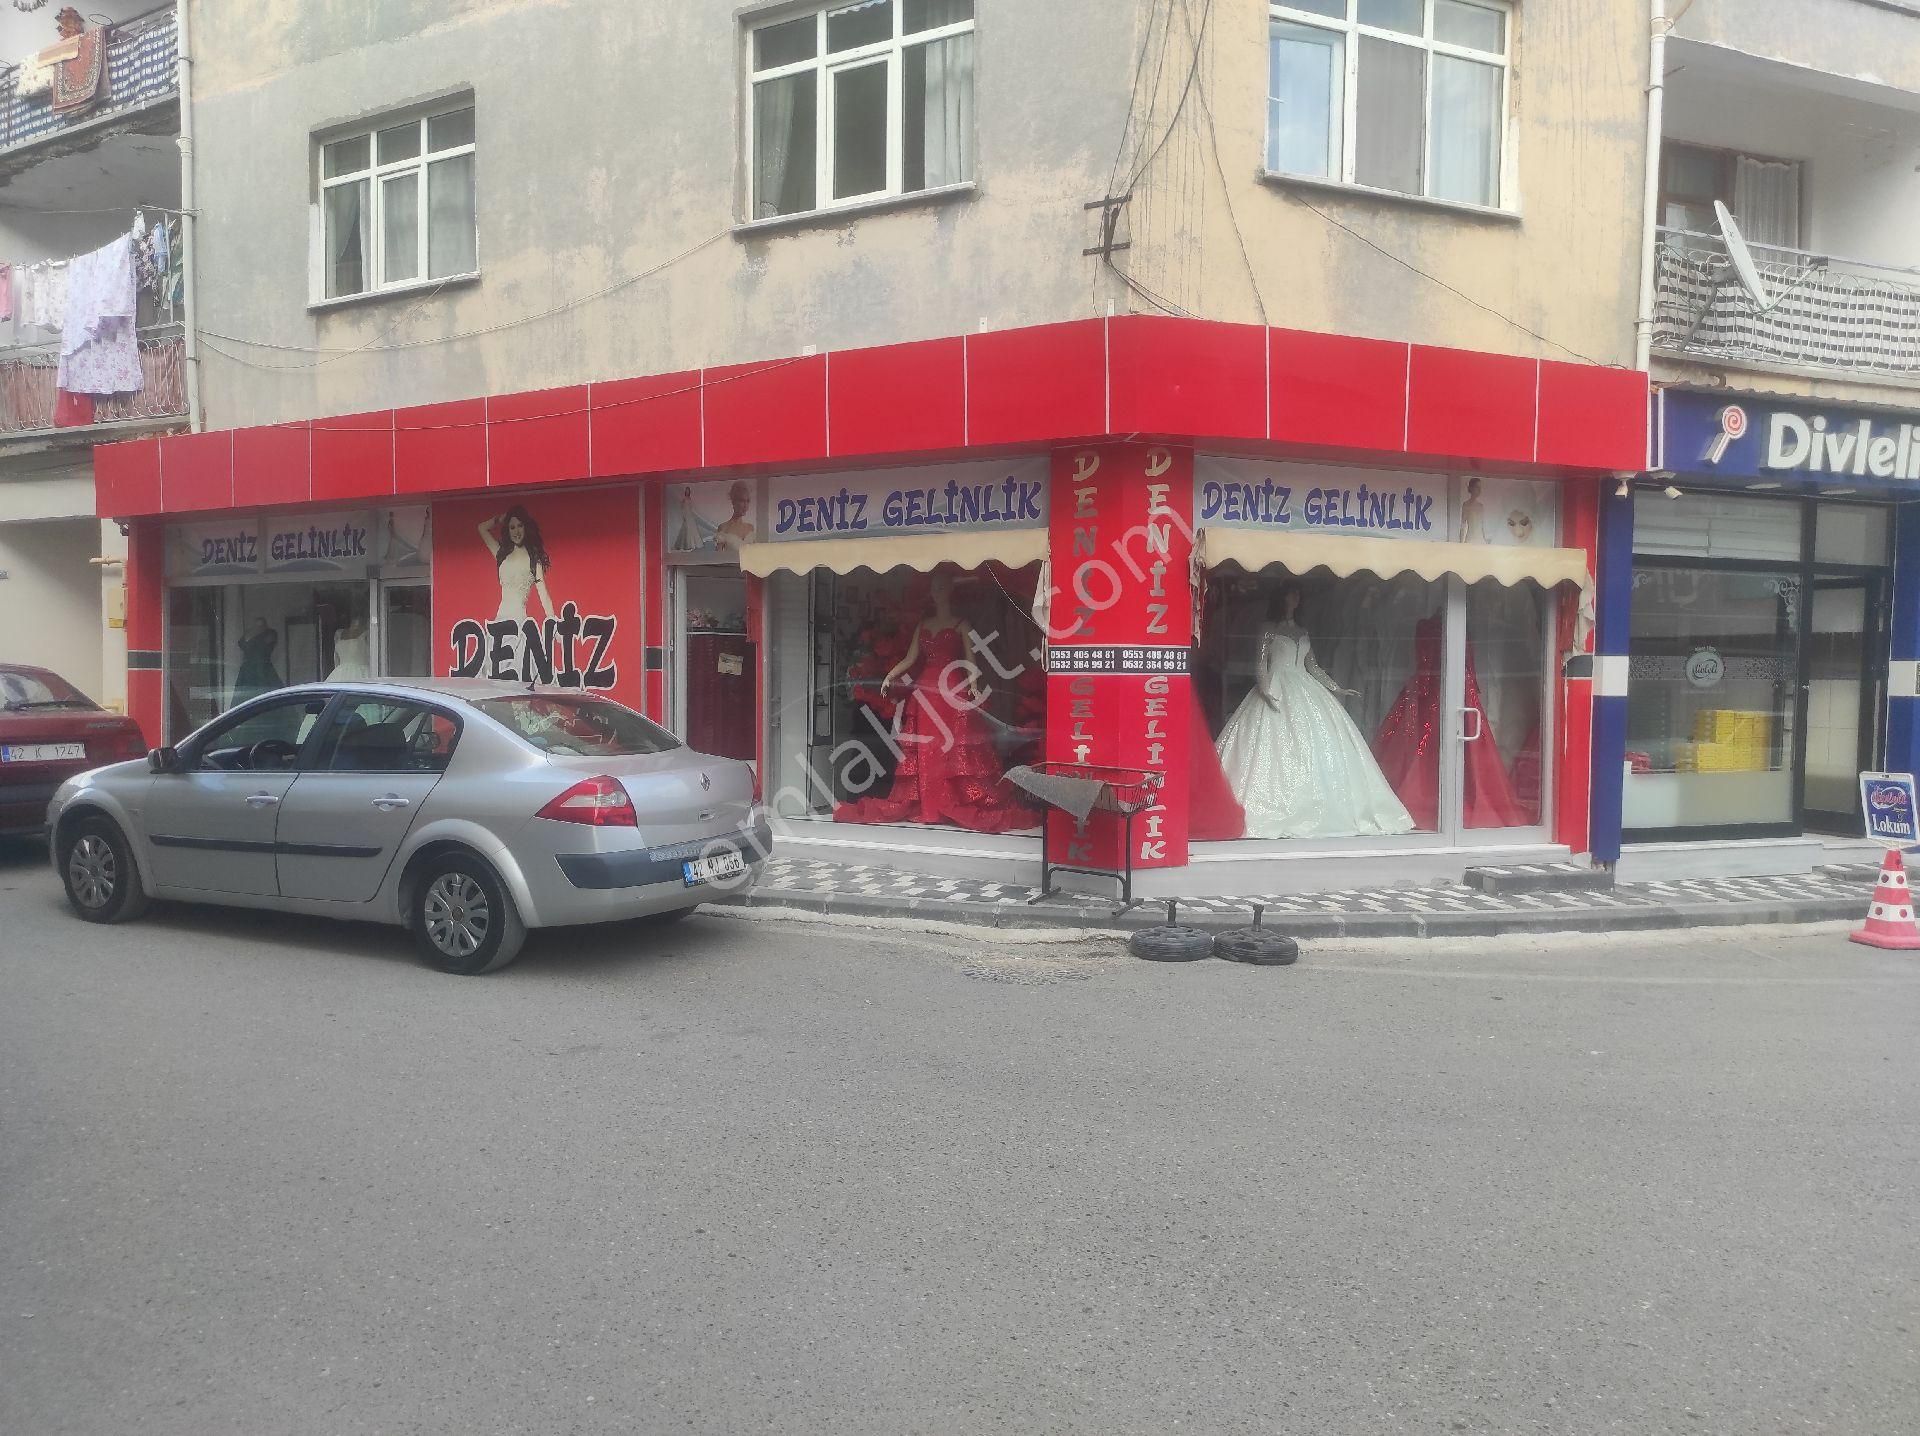 Seydişehir Sofuhane Satılık Dükkan & Mağaza Şehrin merkezinde , en işlek caddesinde, halen gelinlik ticareti yapılan mağaza...